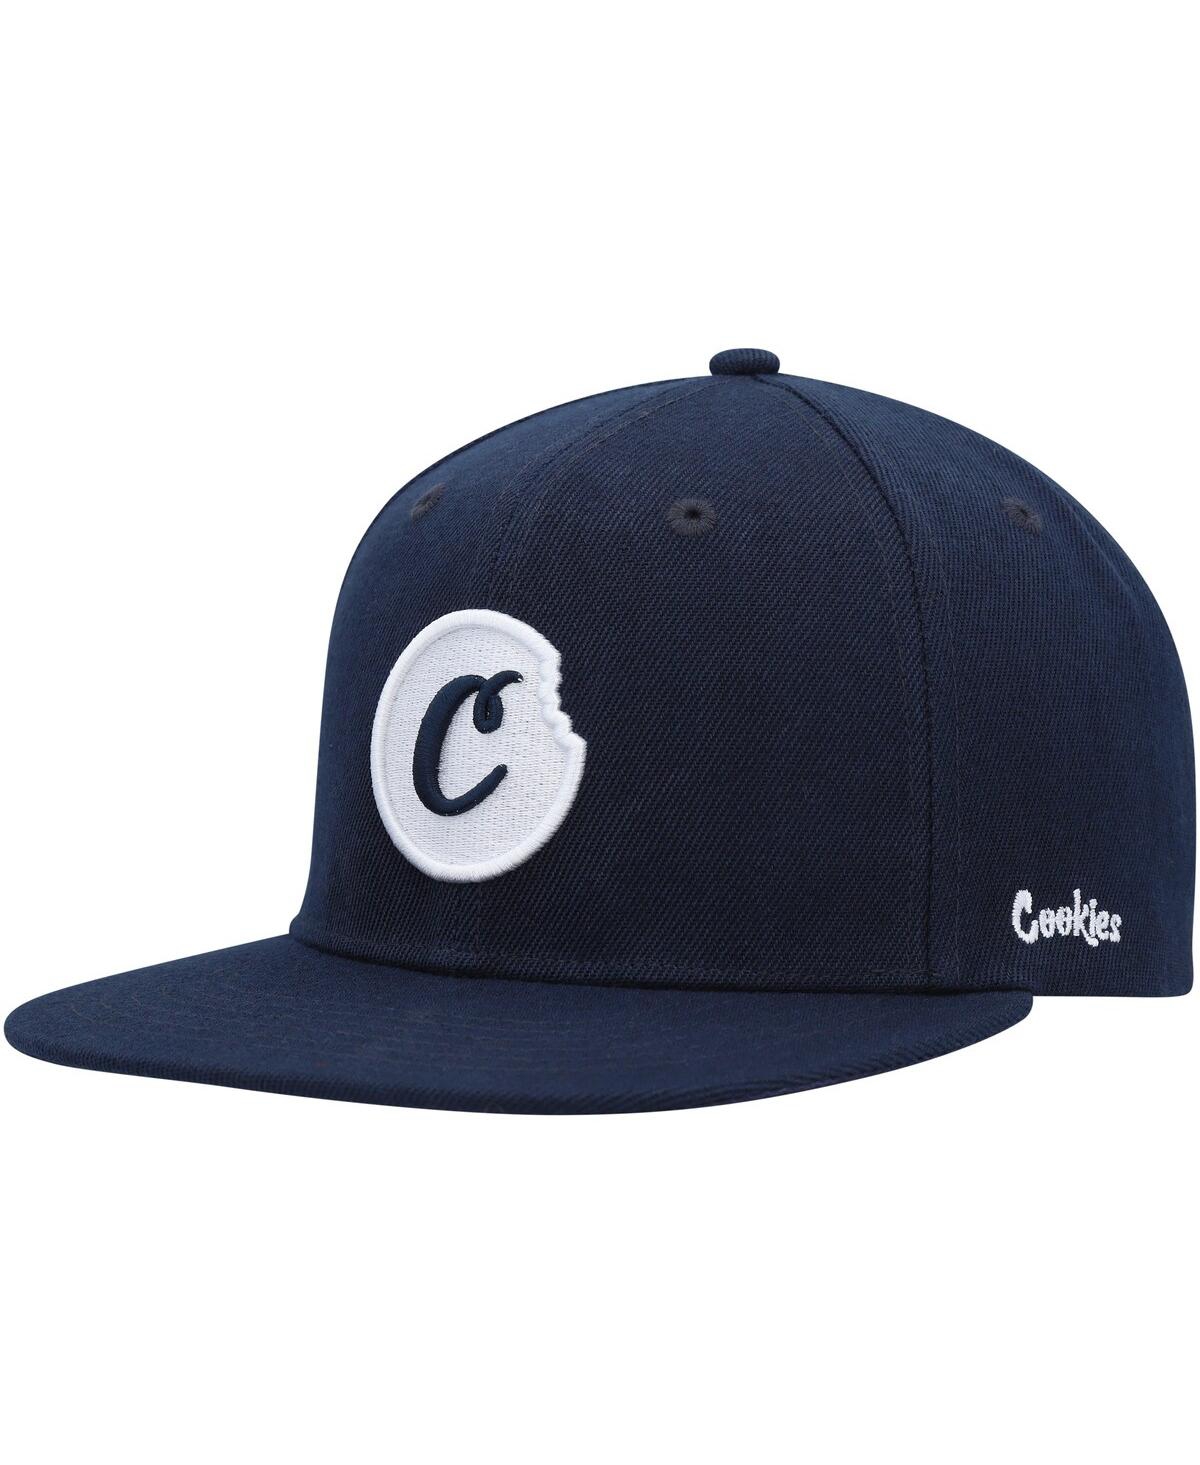 Cookies Men's  Navy C-bite Solid Snapback Hat